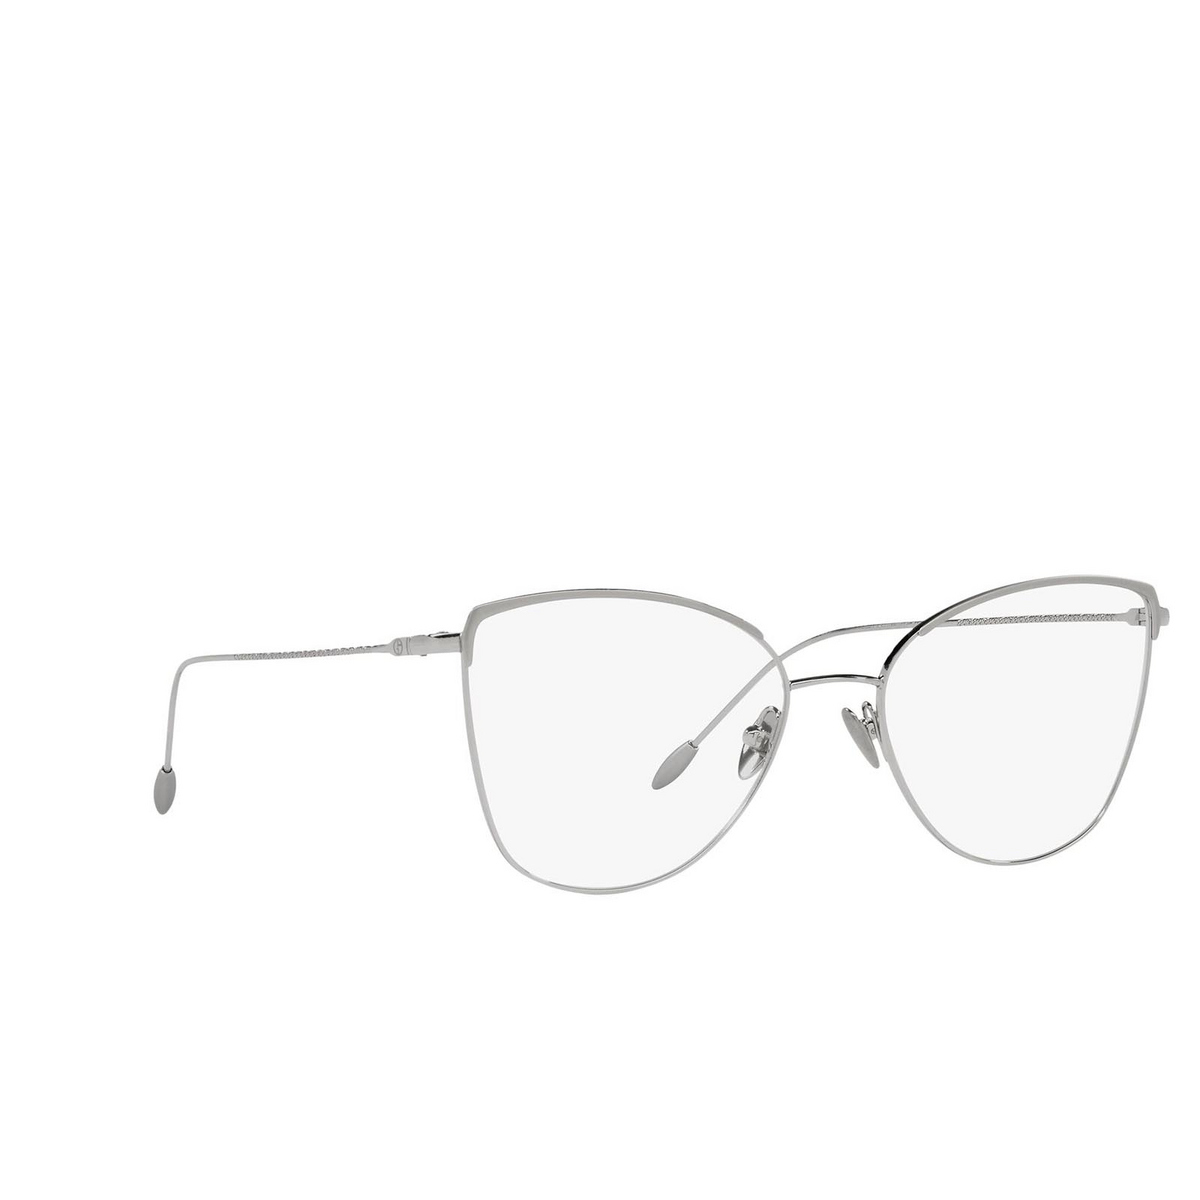 Giorgio Armani AR5110 Eyeglasses 3015 Matte/Shiny Silver - three-quarters view